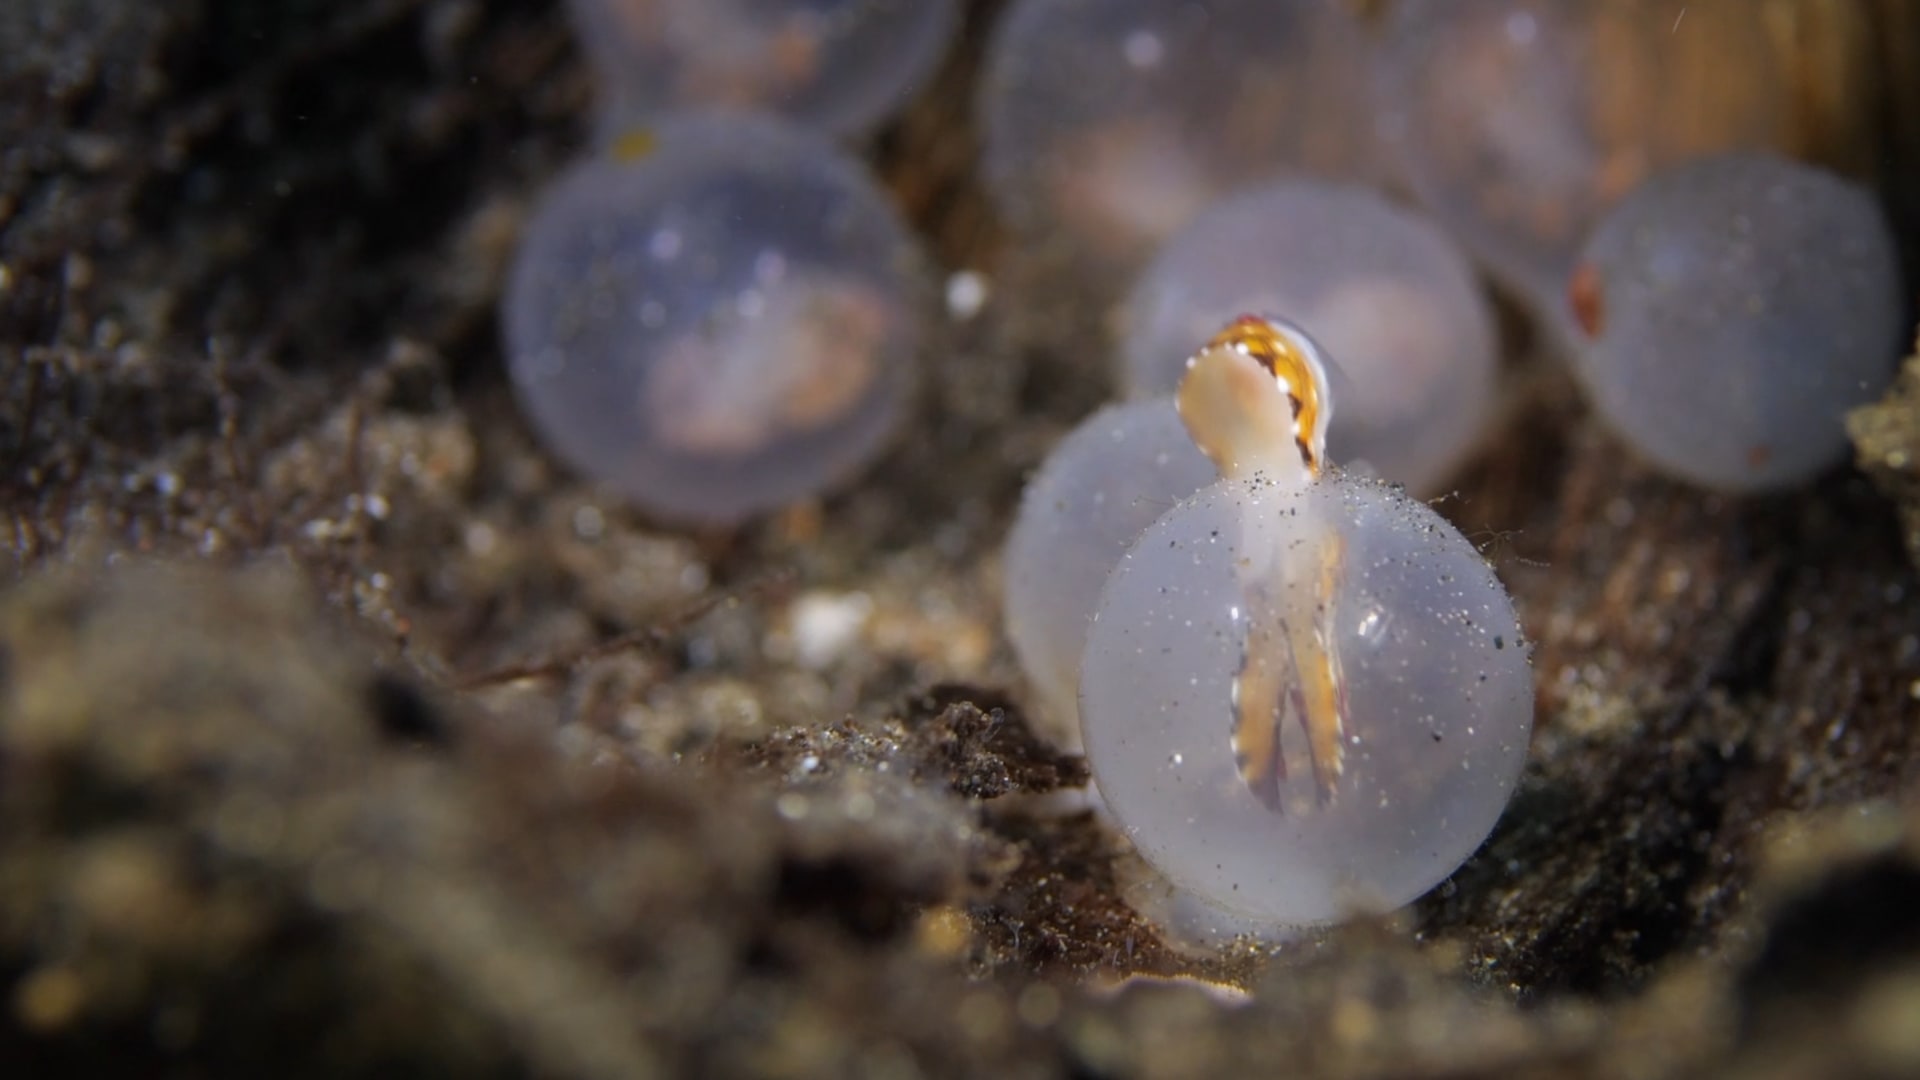 مصور يُوثق لحظة مدهشة تحت الماء لتفقيس بيض صغار الحبار في إندونيسيا - CNN Arabic